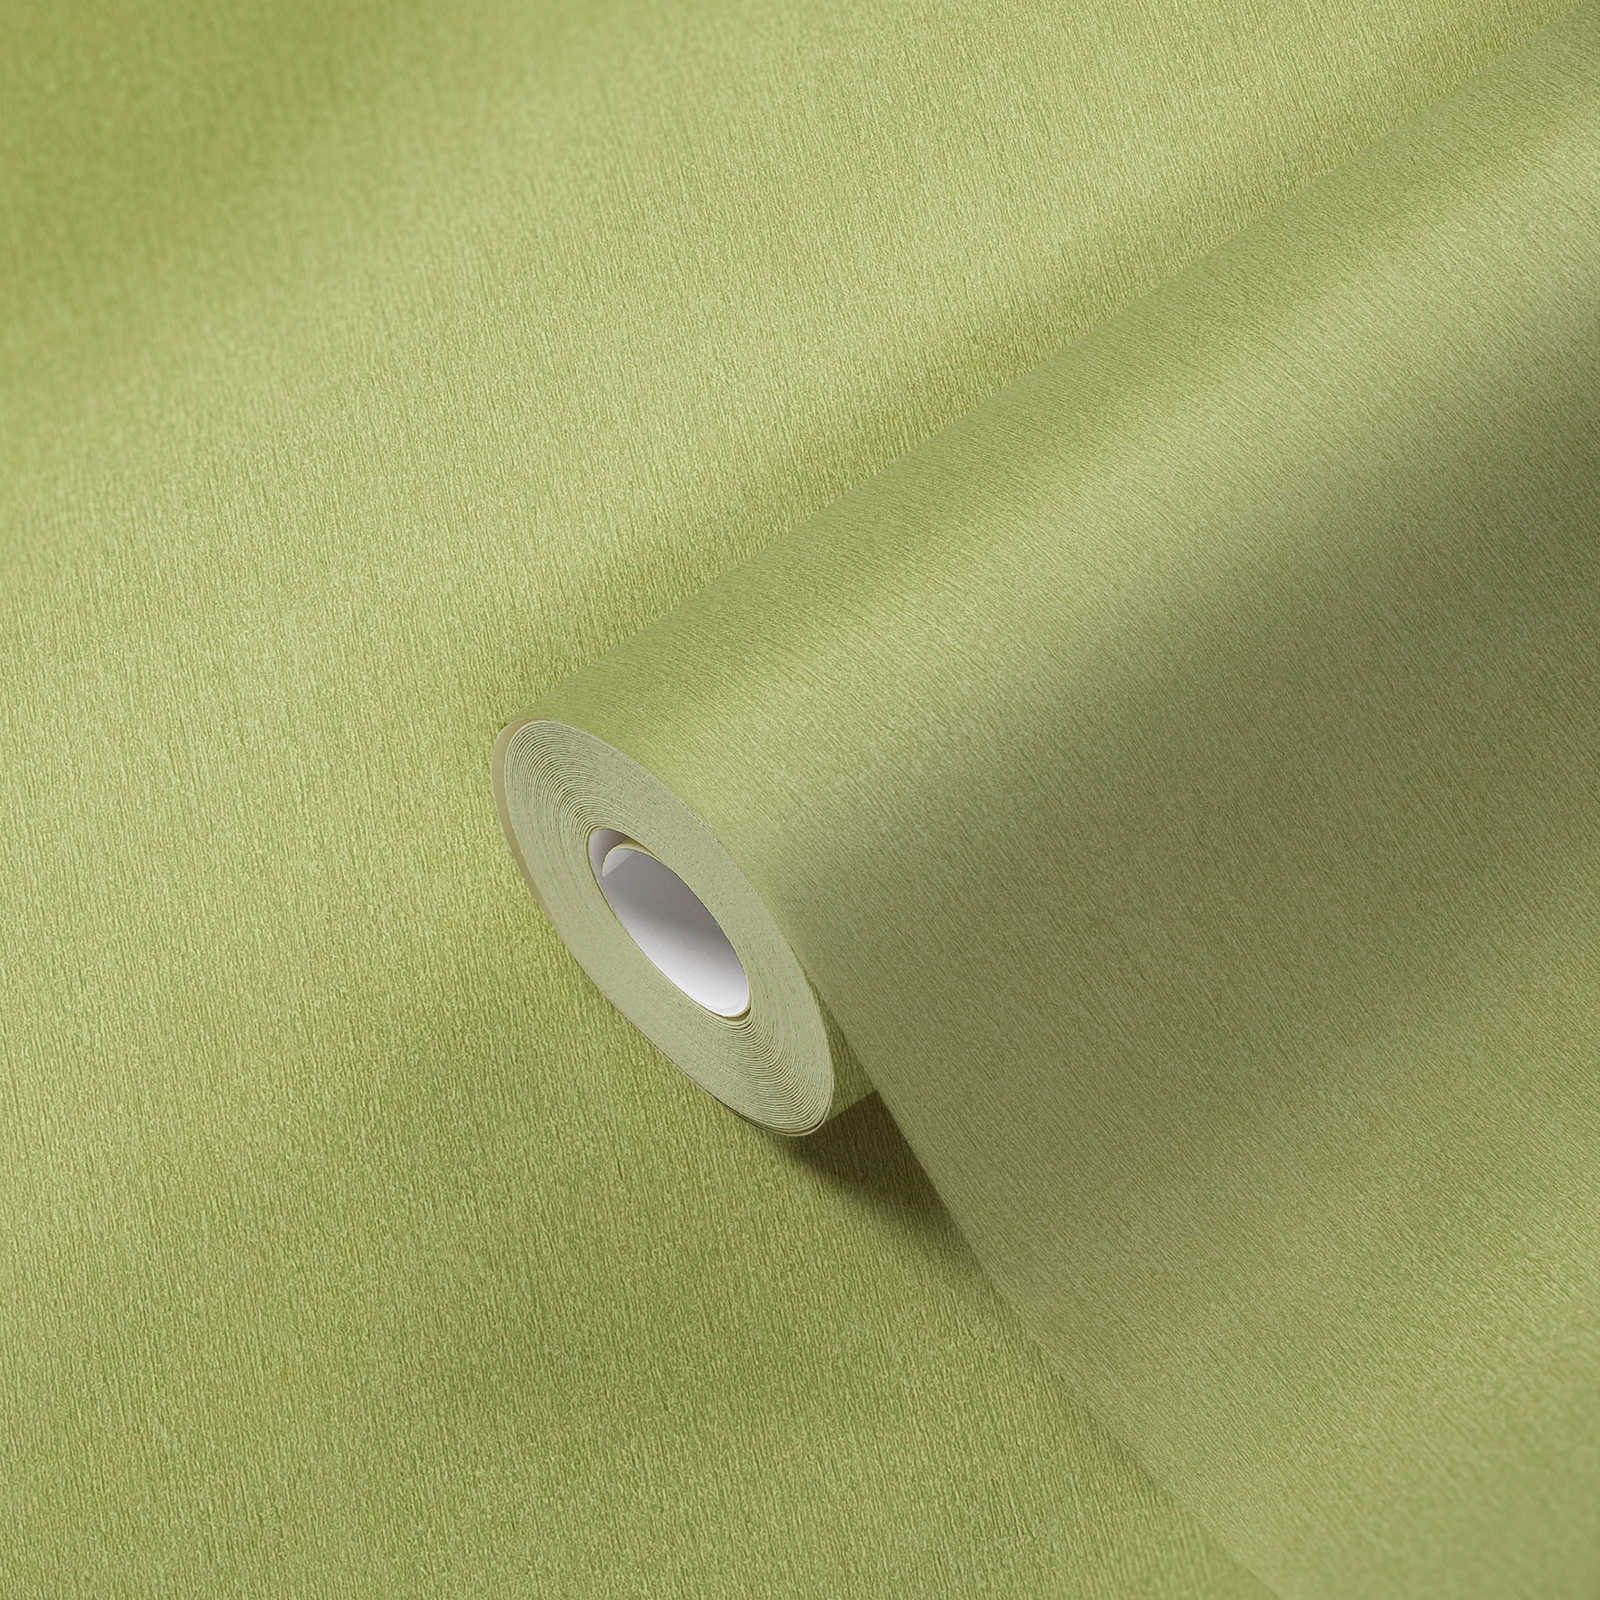             Papier peint vert clair uni vert citron avec hachures de couleur
        